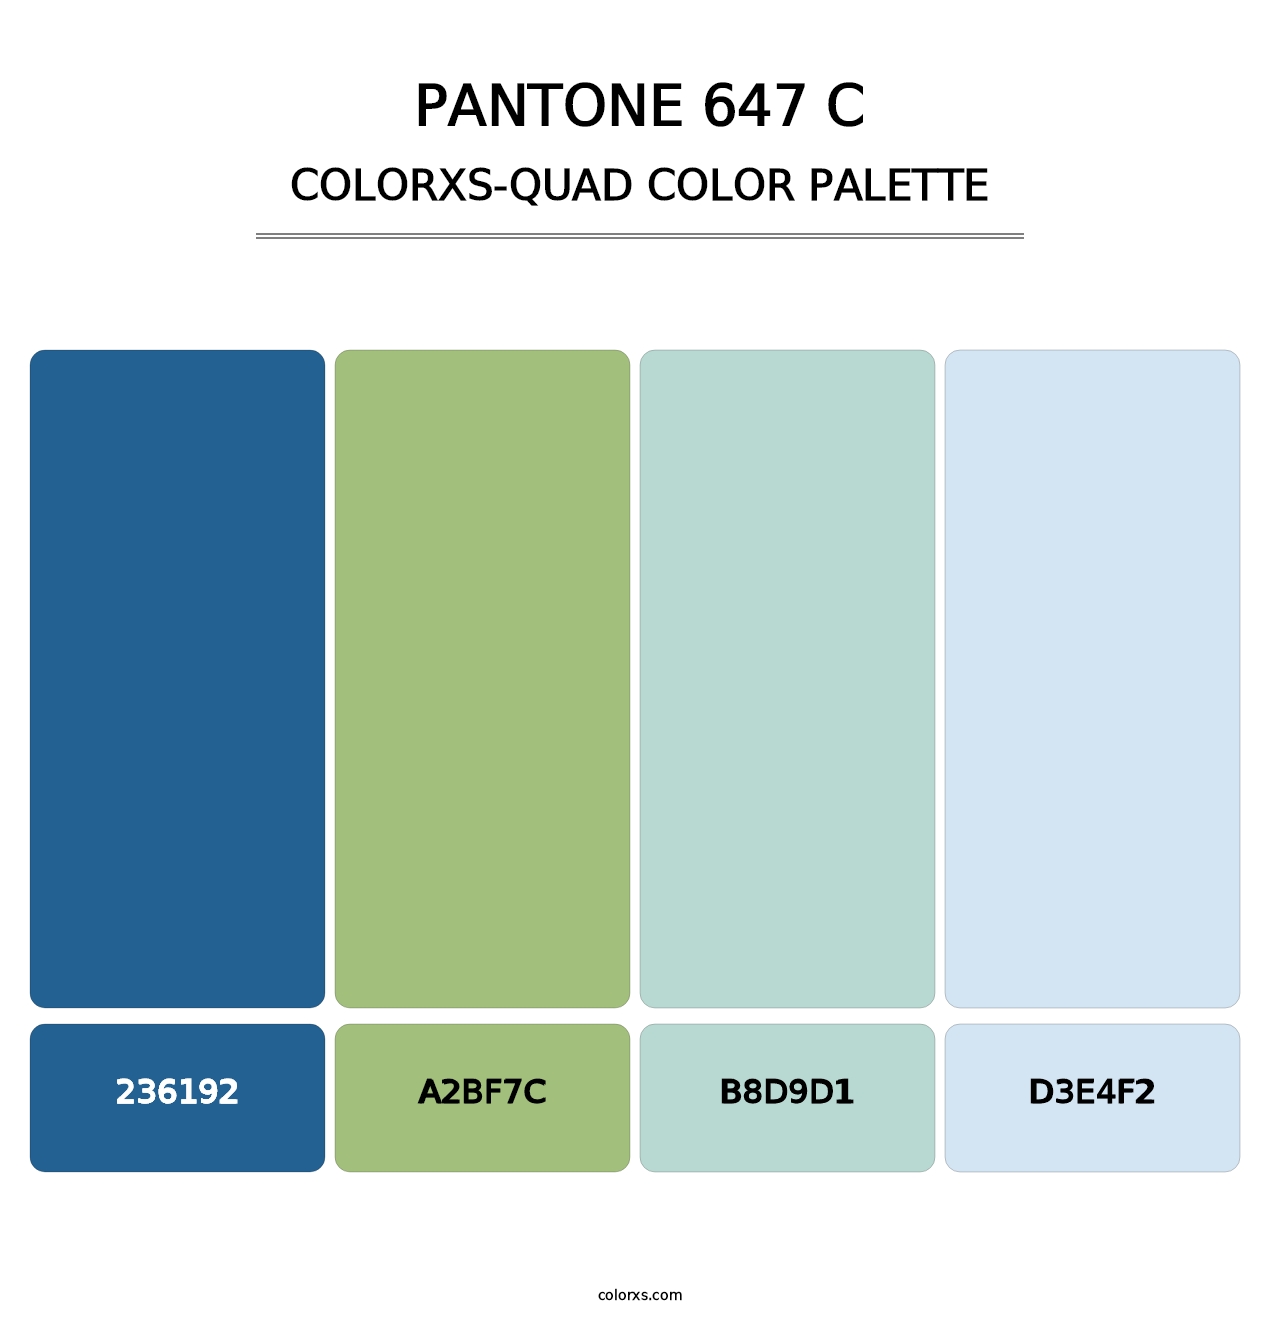 PANTONE 647 C - Colorxs Quad Palette